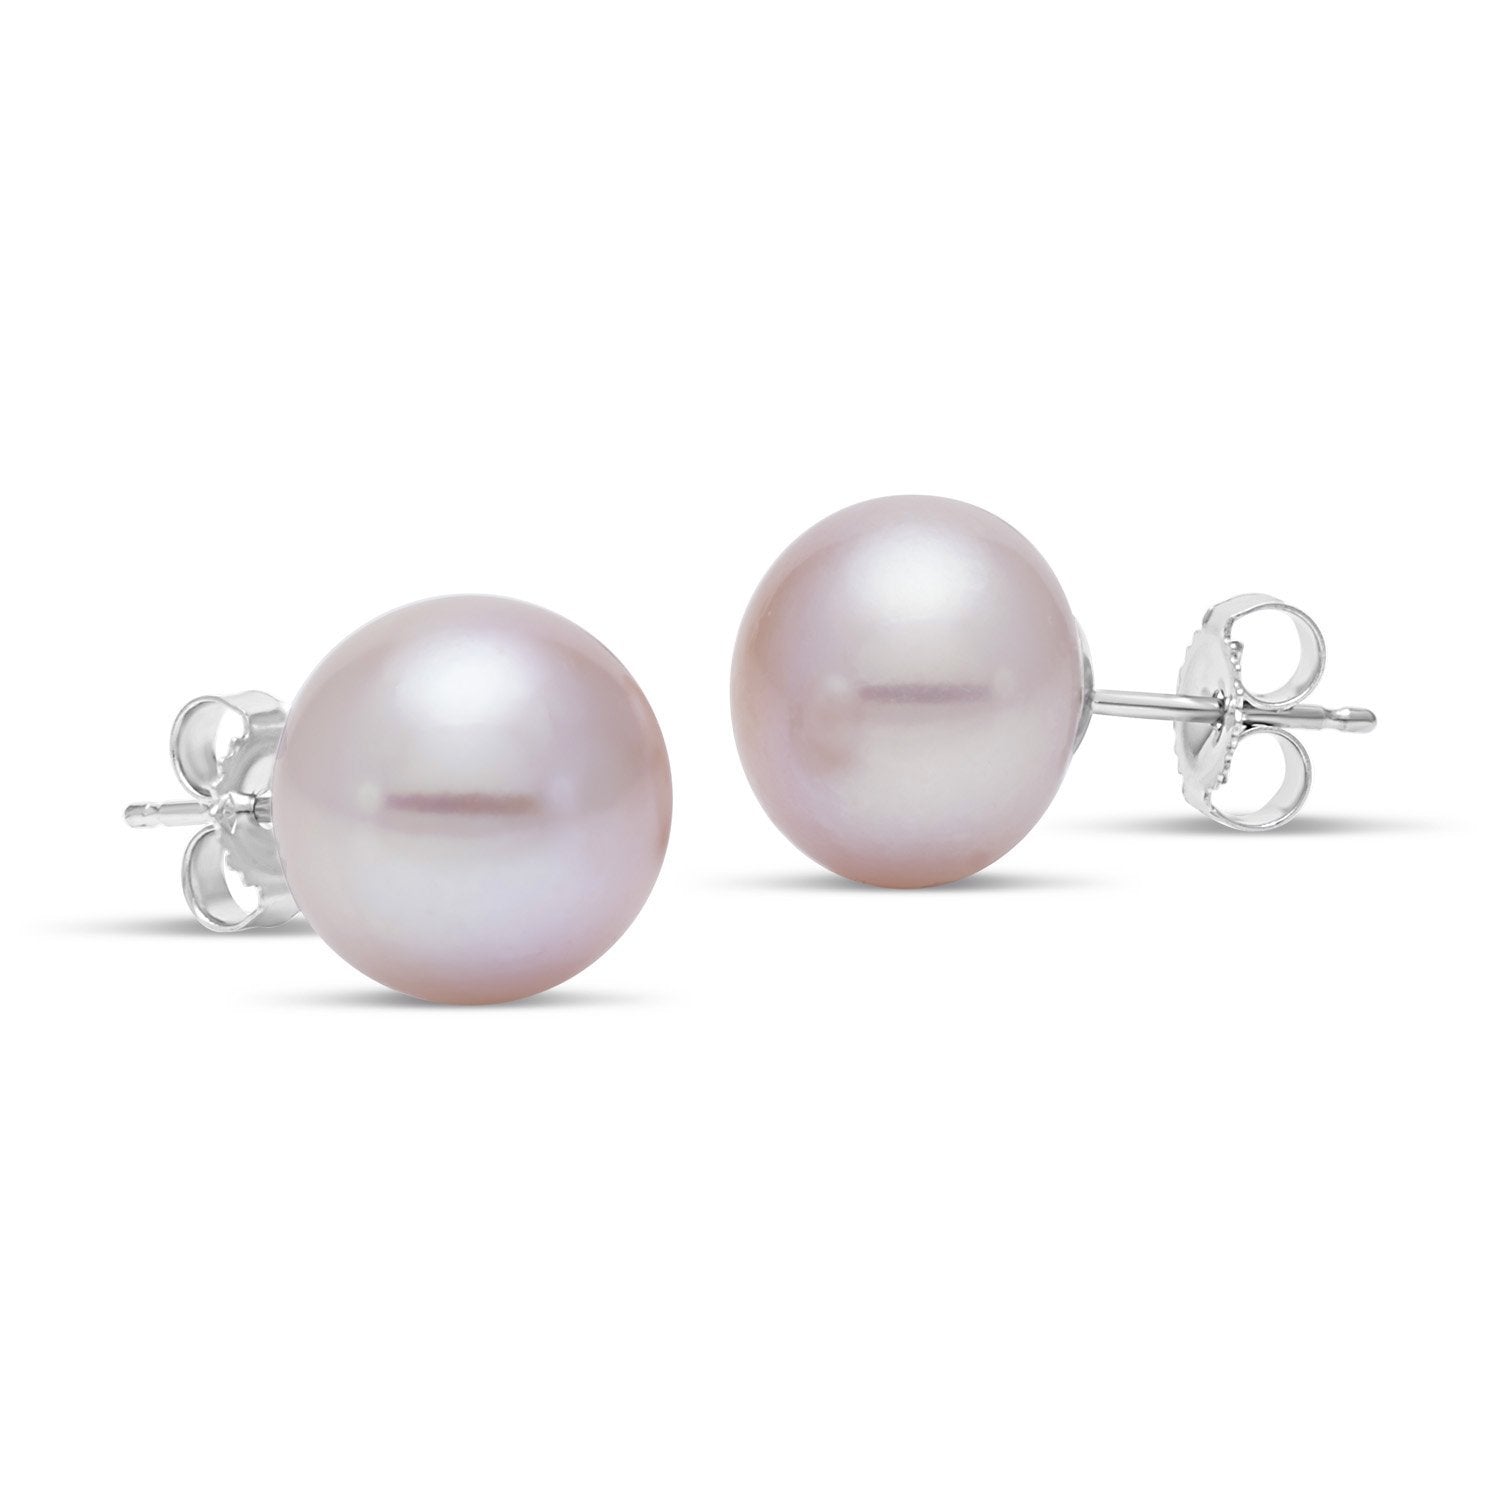 Minimalist Gold/Silver Pearl Stud Earrings, 7.4mm-8mm Round Black White  Pink Purple Pearl Stud, Bridal Graduation Streetwear Jewelry, T-375 ~  T-379 V-399